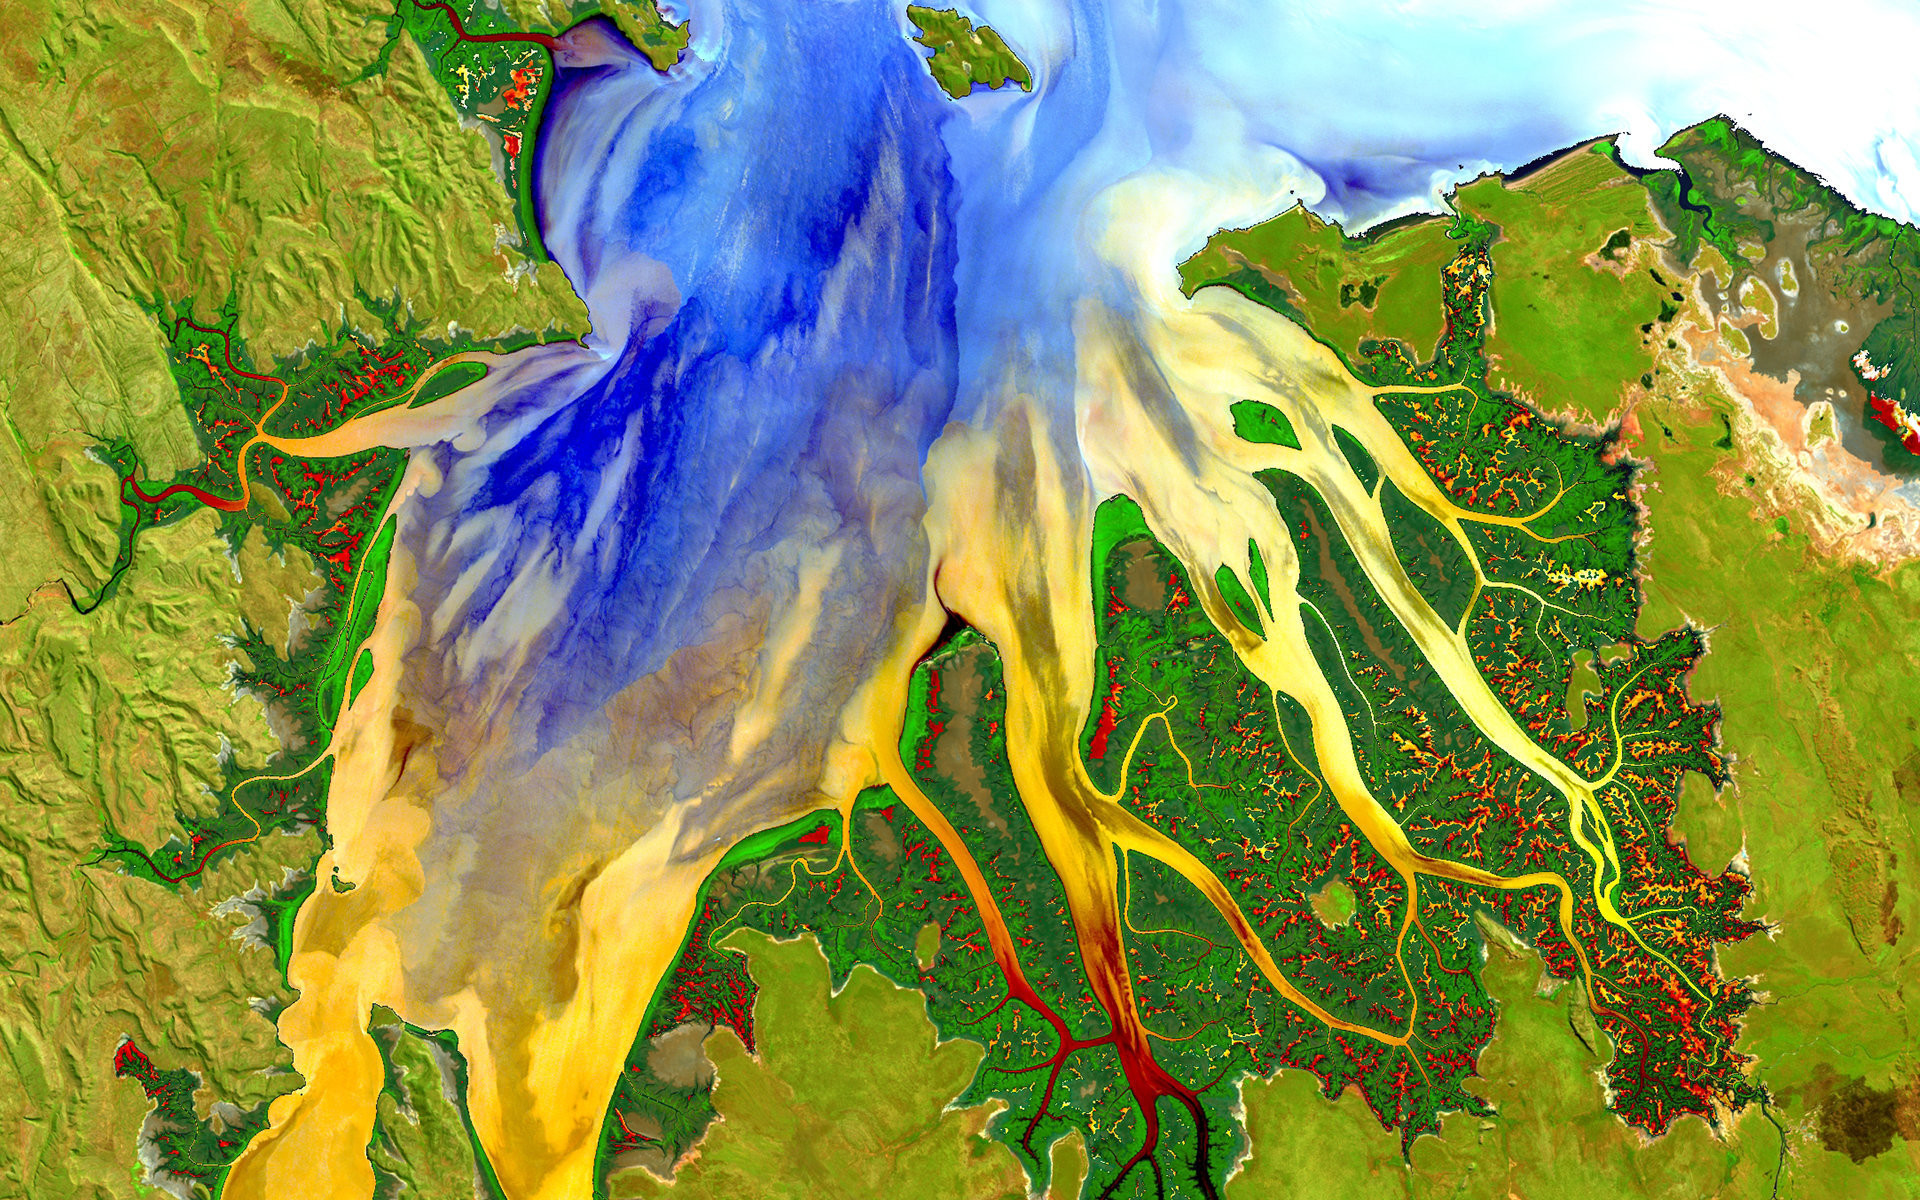 Западная Австралия в 2013 году. На фотографии изображена дельта реки, цвета изменены, чтобы показать интенсивность выноса взвеси в море.